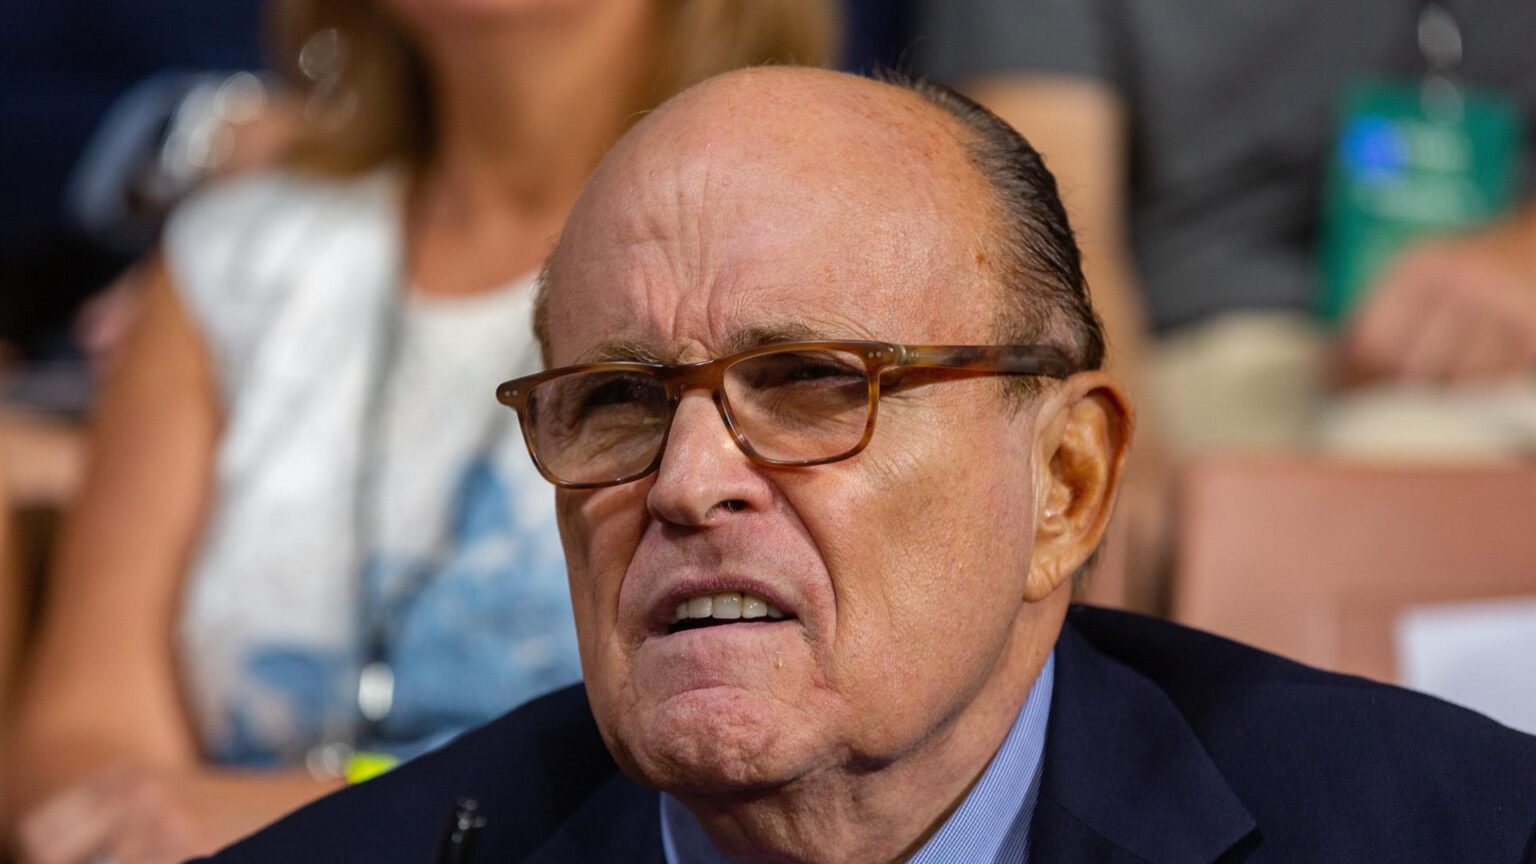 Rudy Giuliani, exalcalde de Nueva York y exabogado de Trump, acusado de acoso sexual